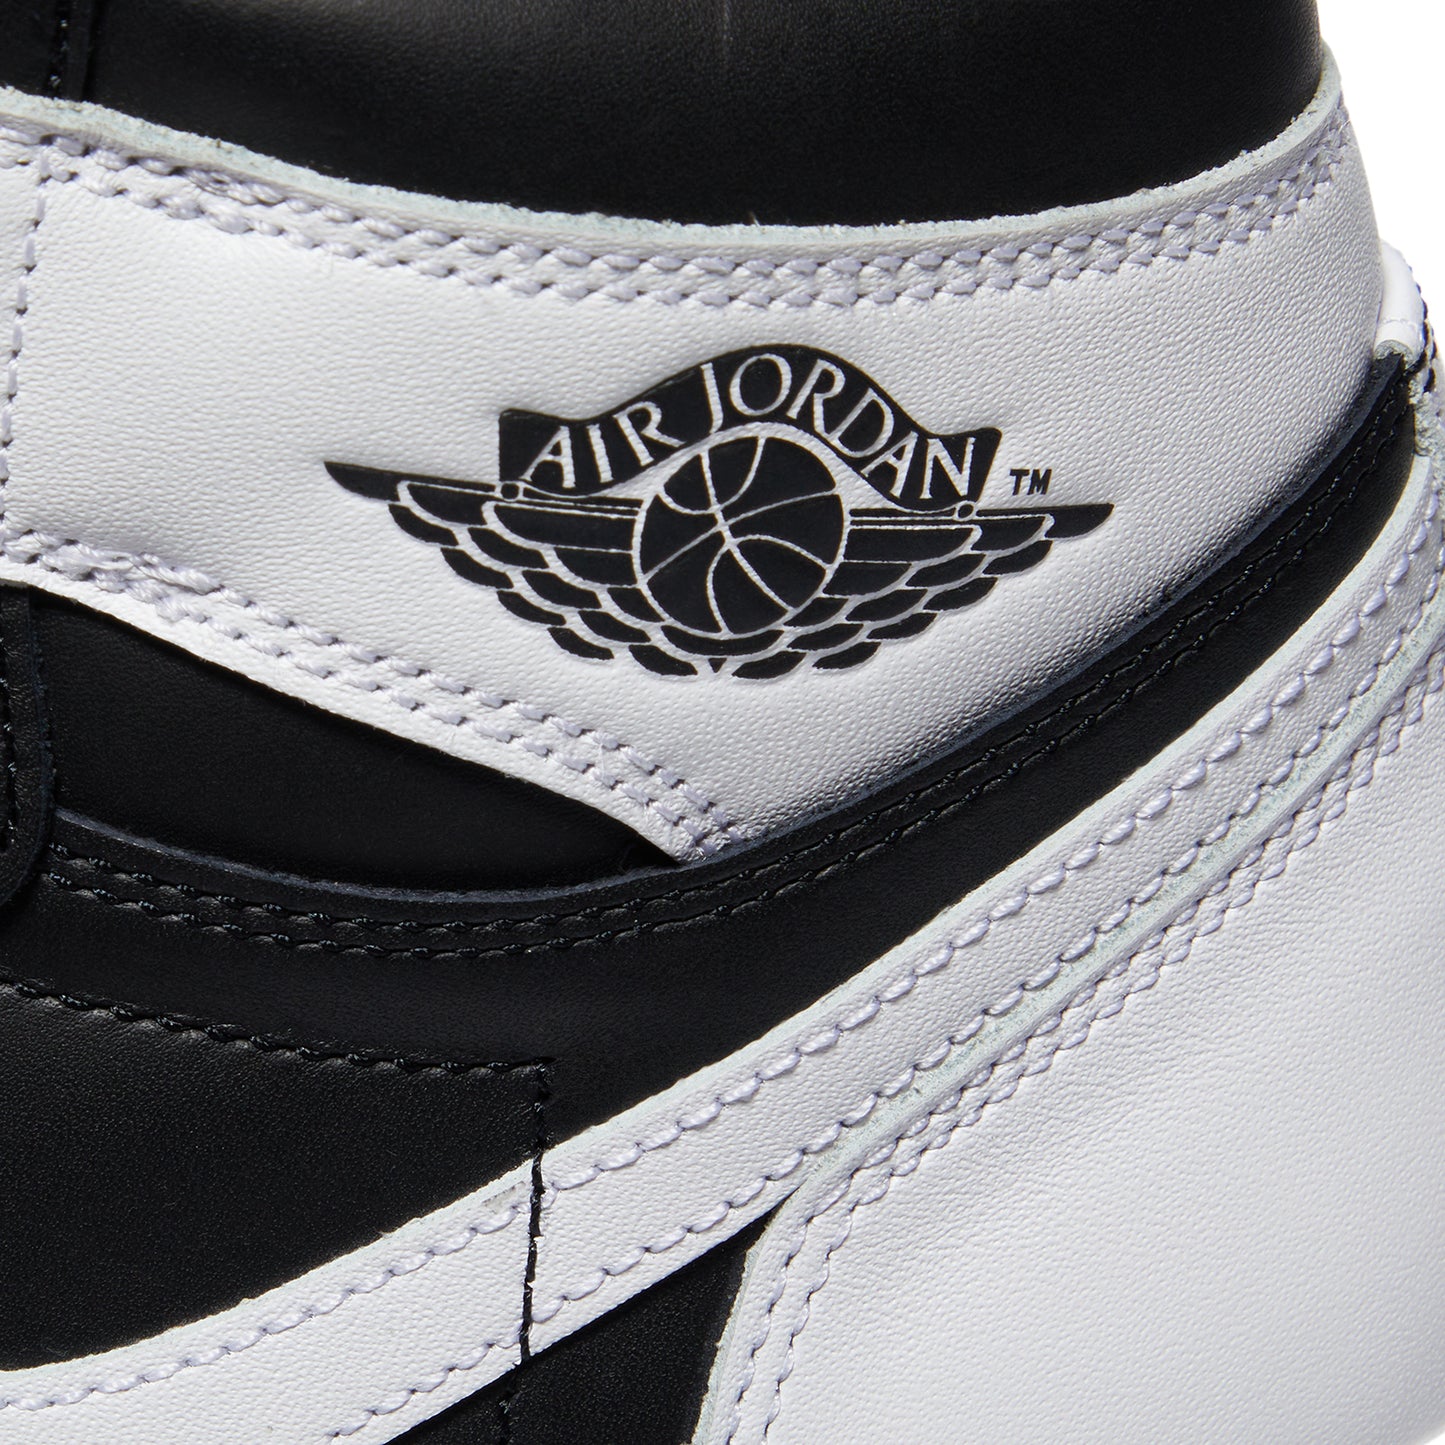 Air Jordan 1 Retro High OG (Black/White)